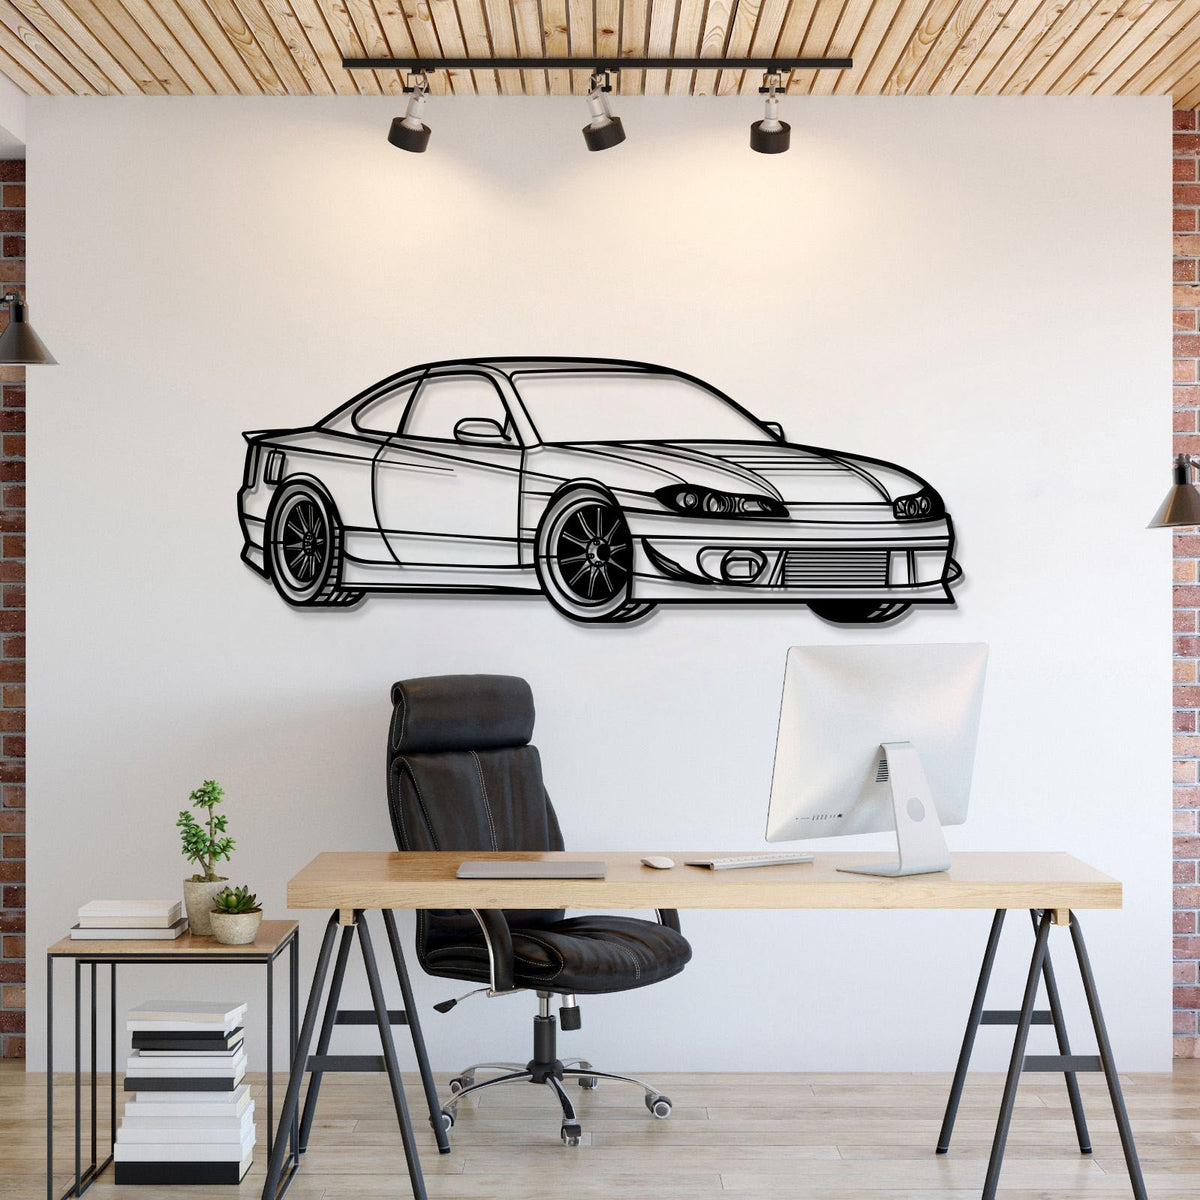 Silvia S15 Perspective Metal Car Wall Art - MT1135